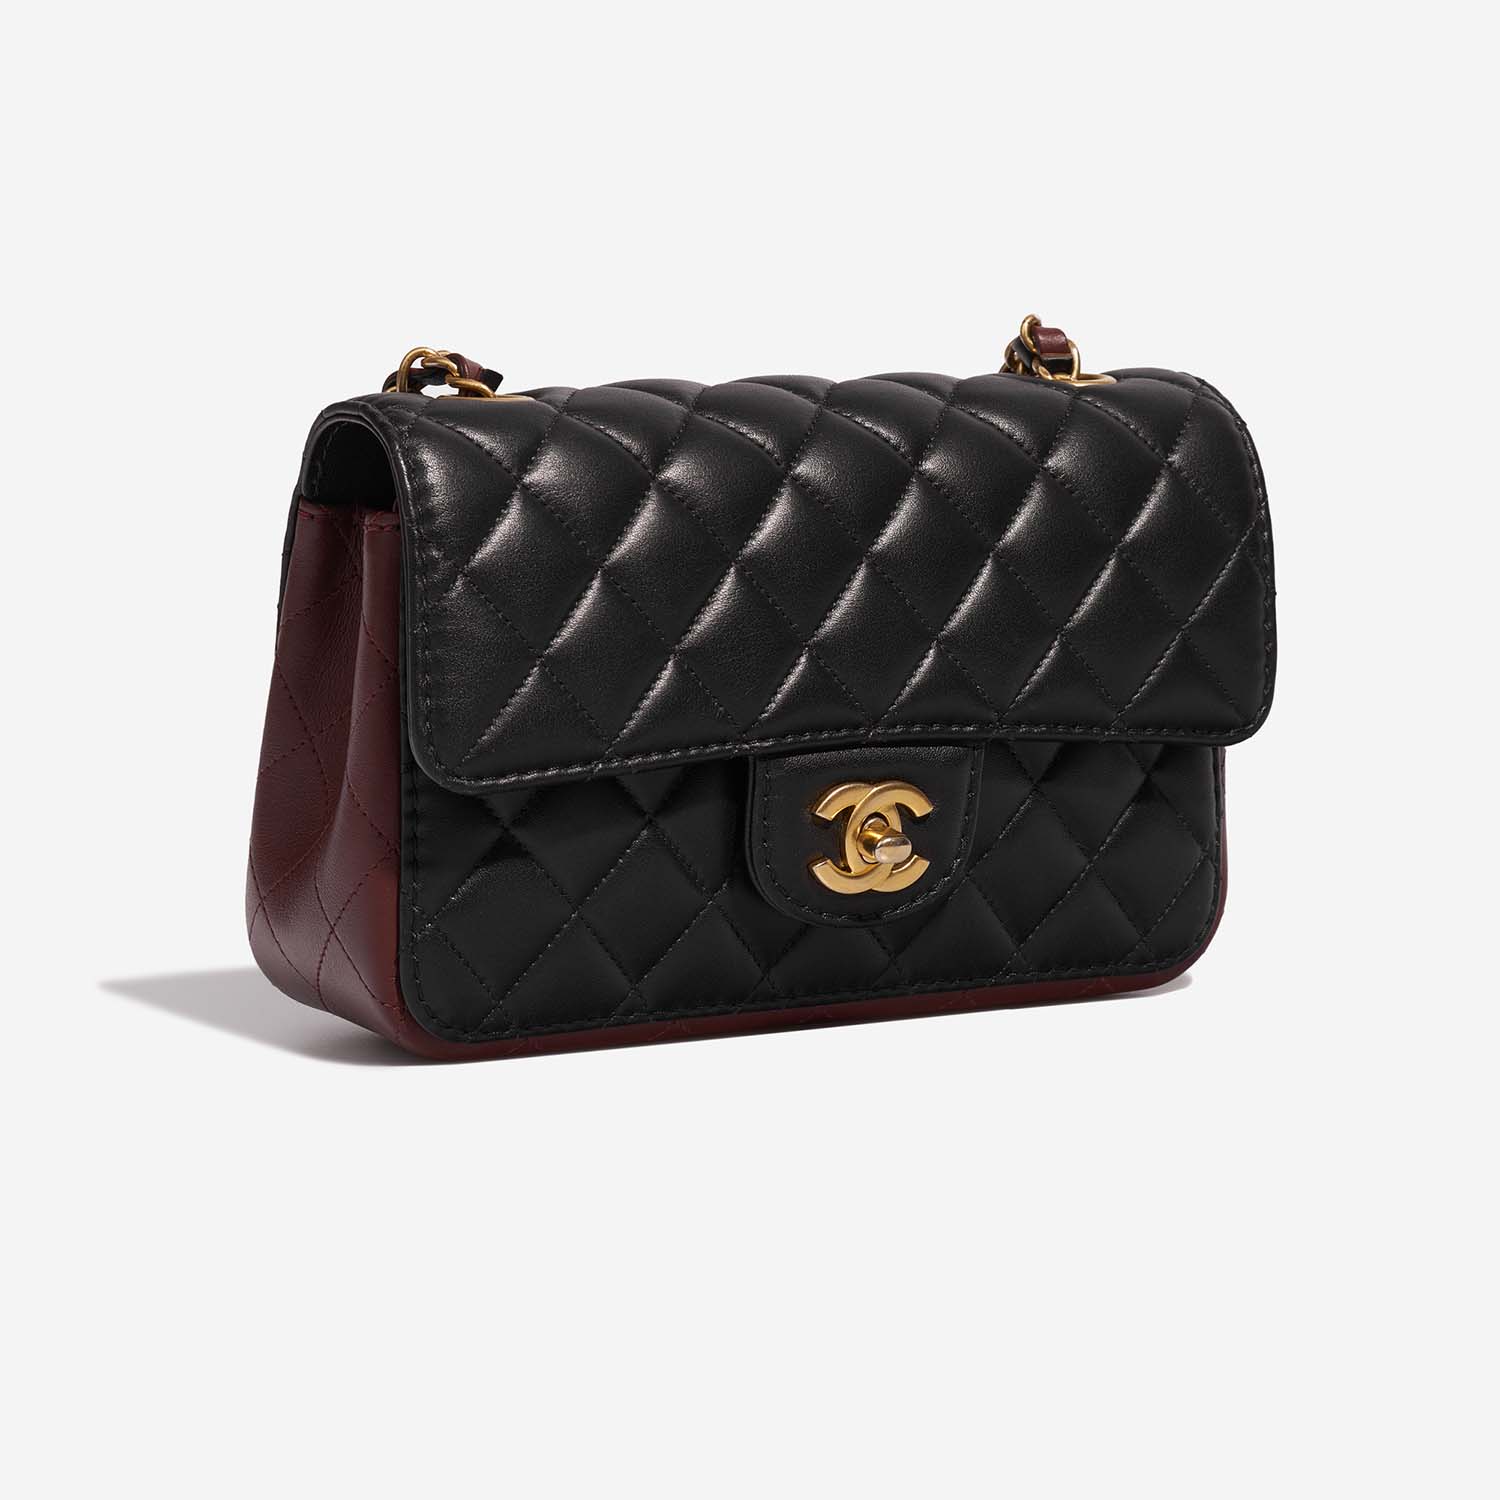 Chanel Timeless MiniRectangular Black-DarkBurgundy Side Front | Verkaufen Sie Ihre Designer-Tasche auf Saclab.com